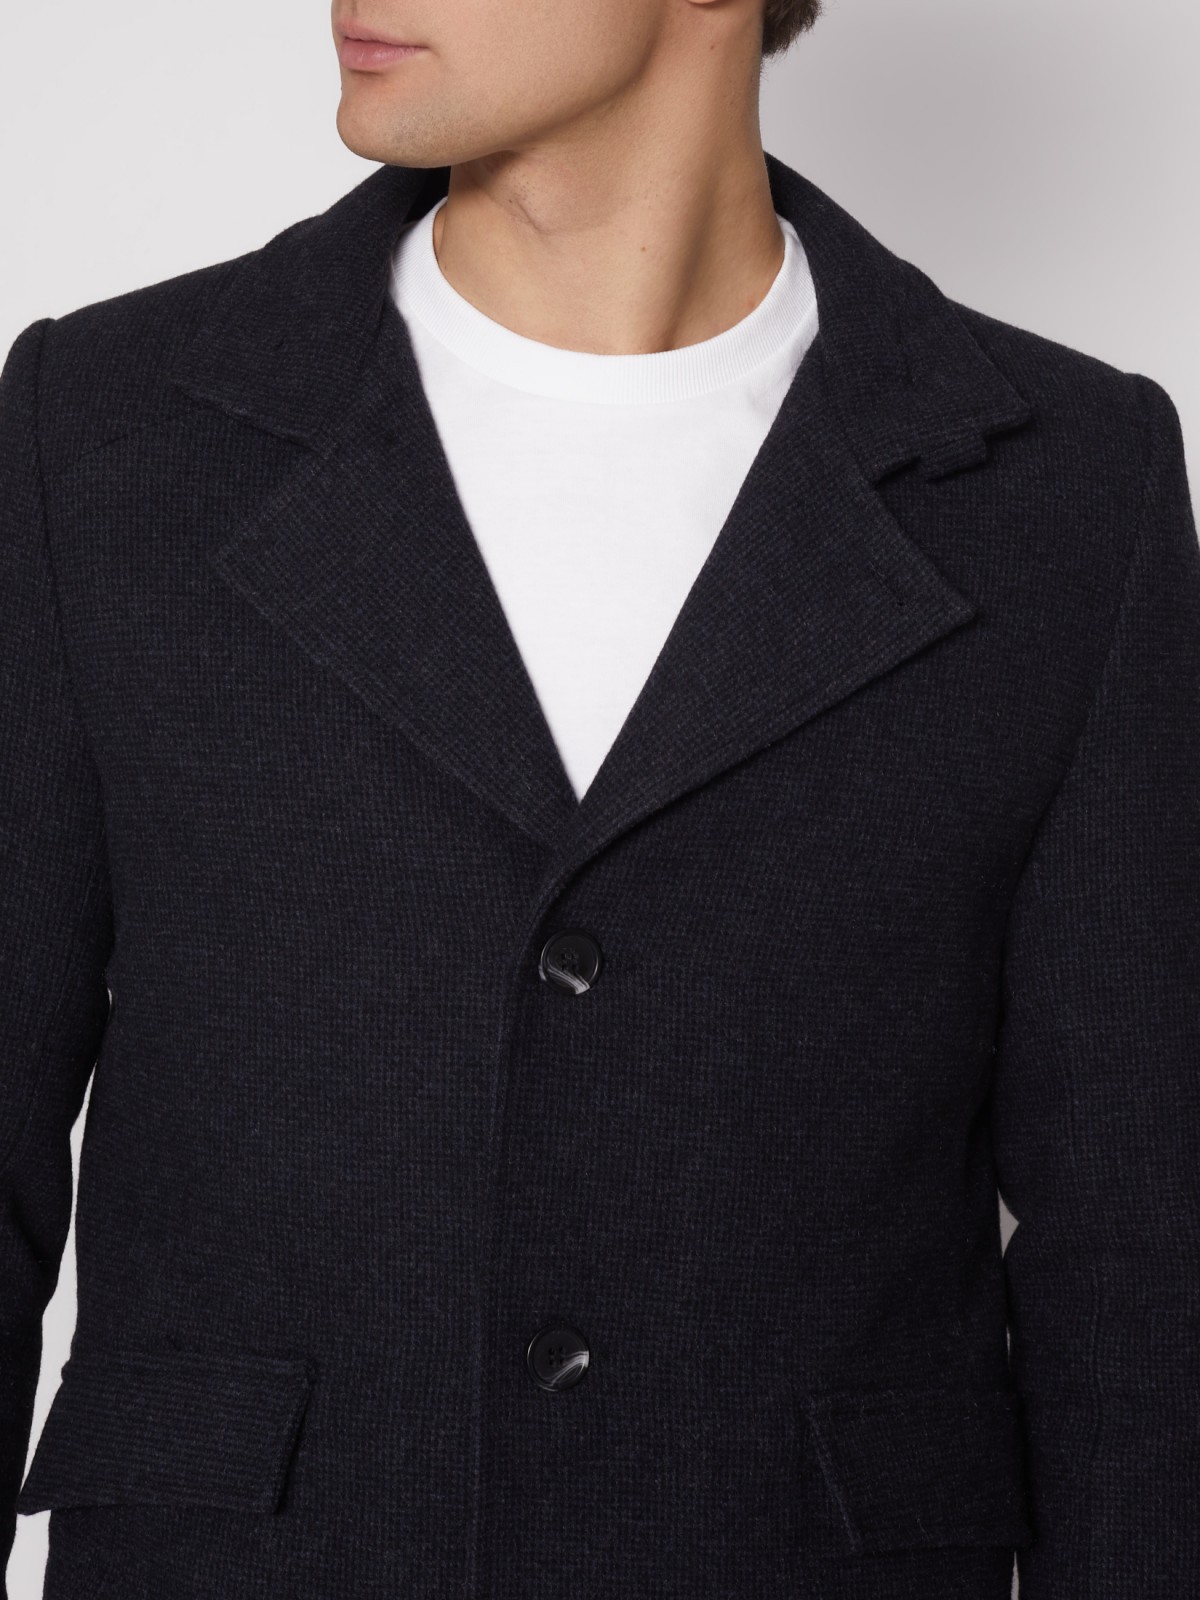 Утеплённое однобортное пальто zolla 012135839014, цвет темно-синий, размер S - фото 5